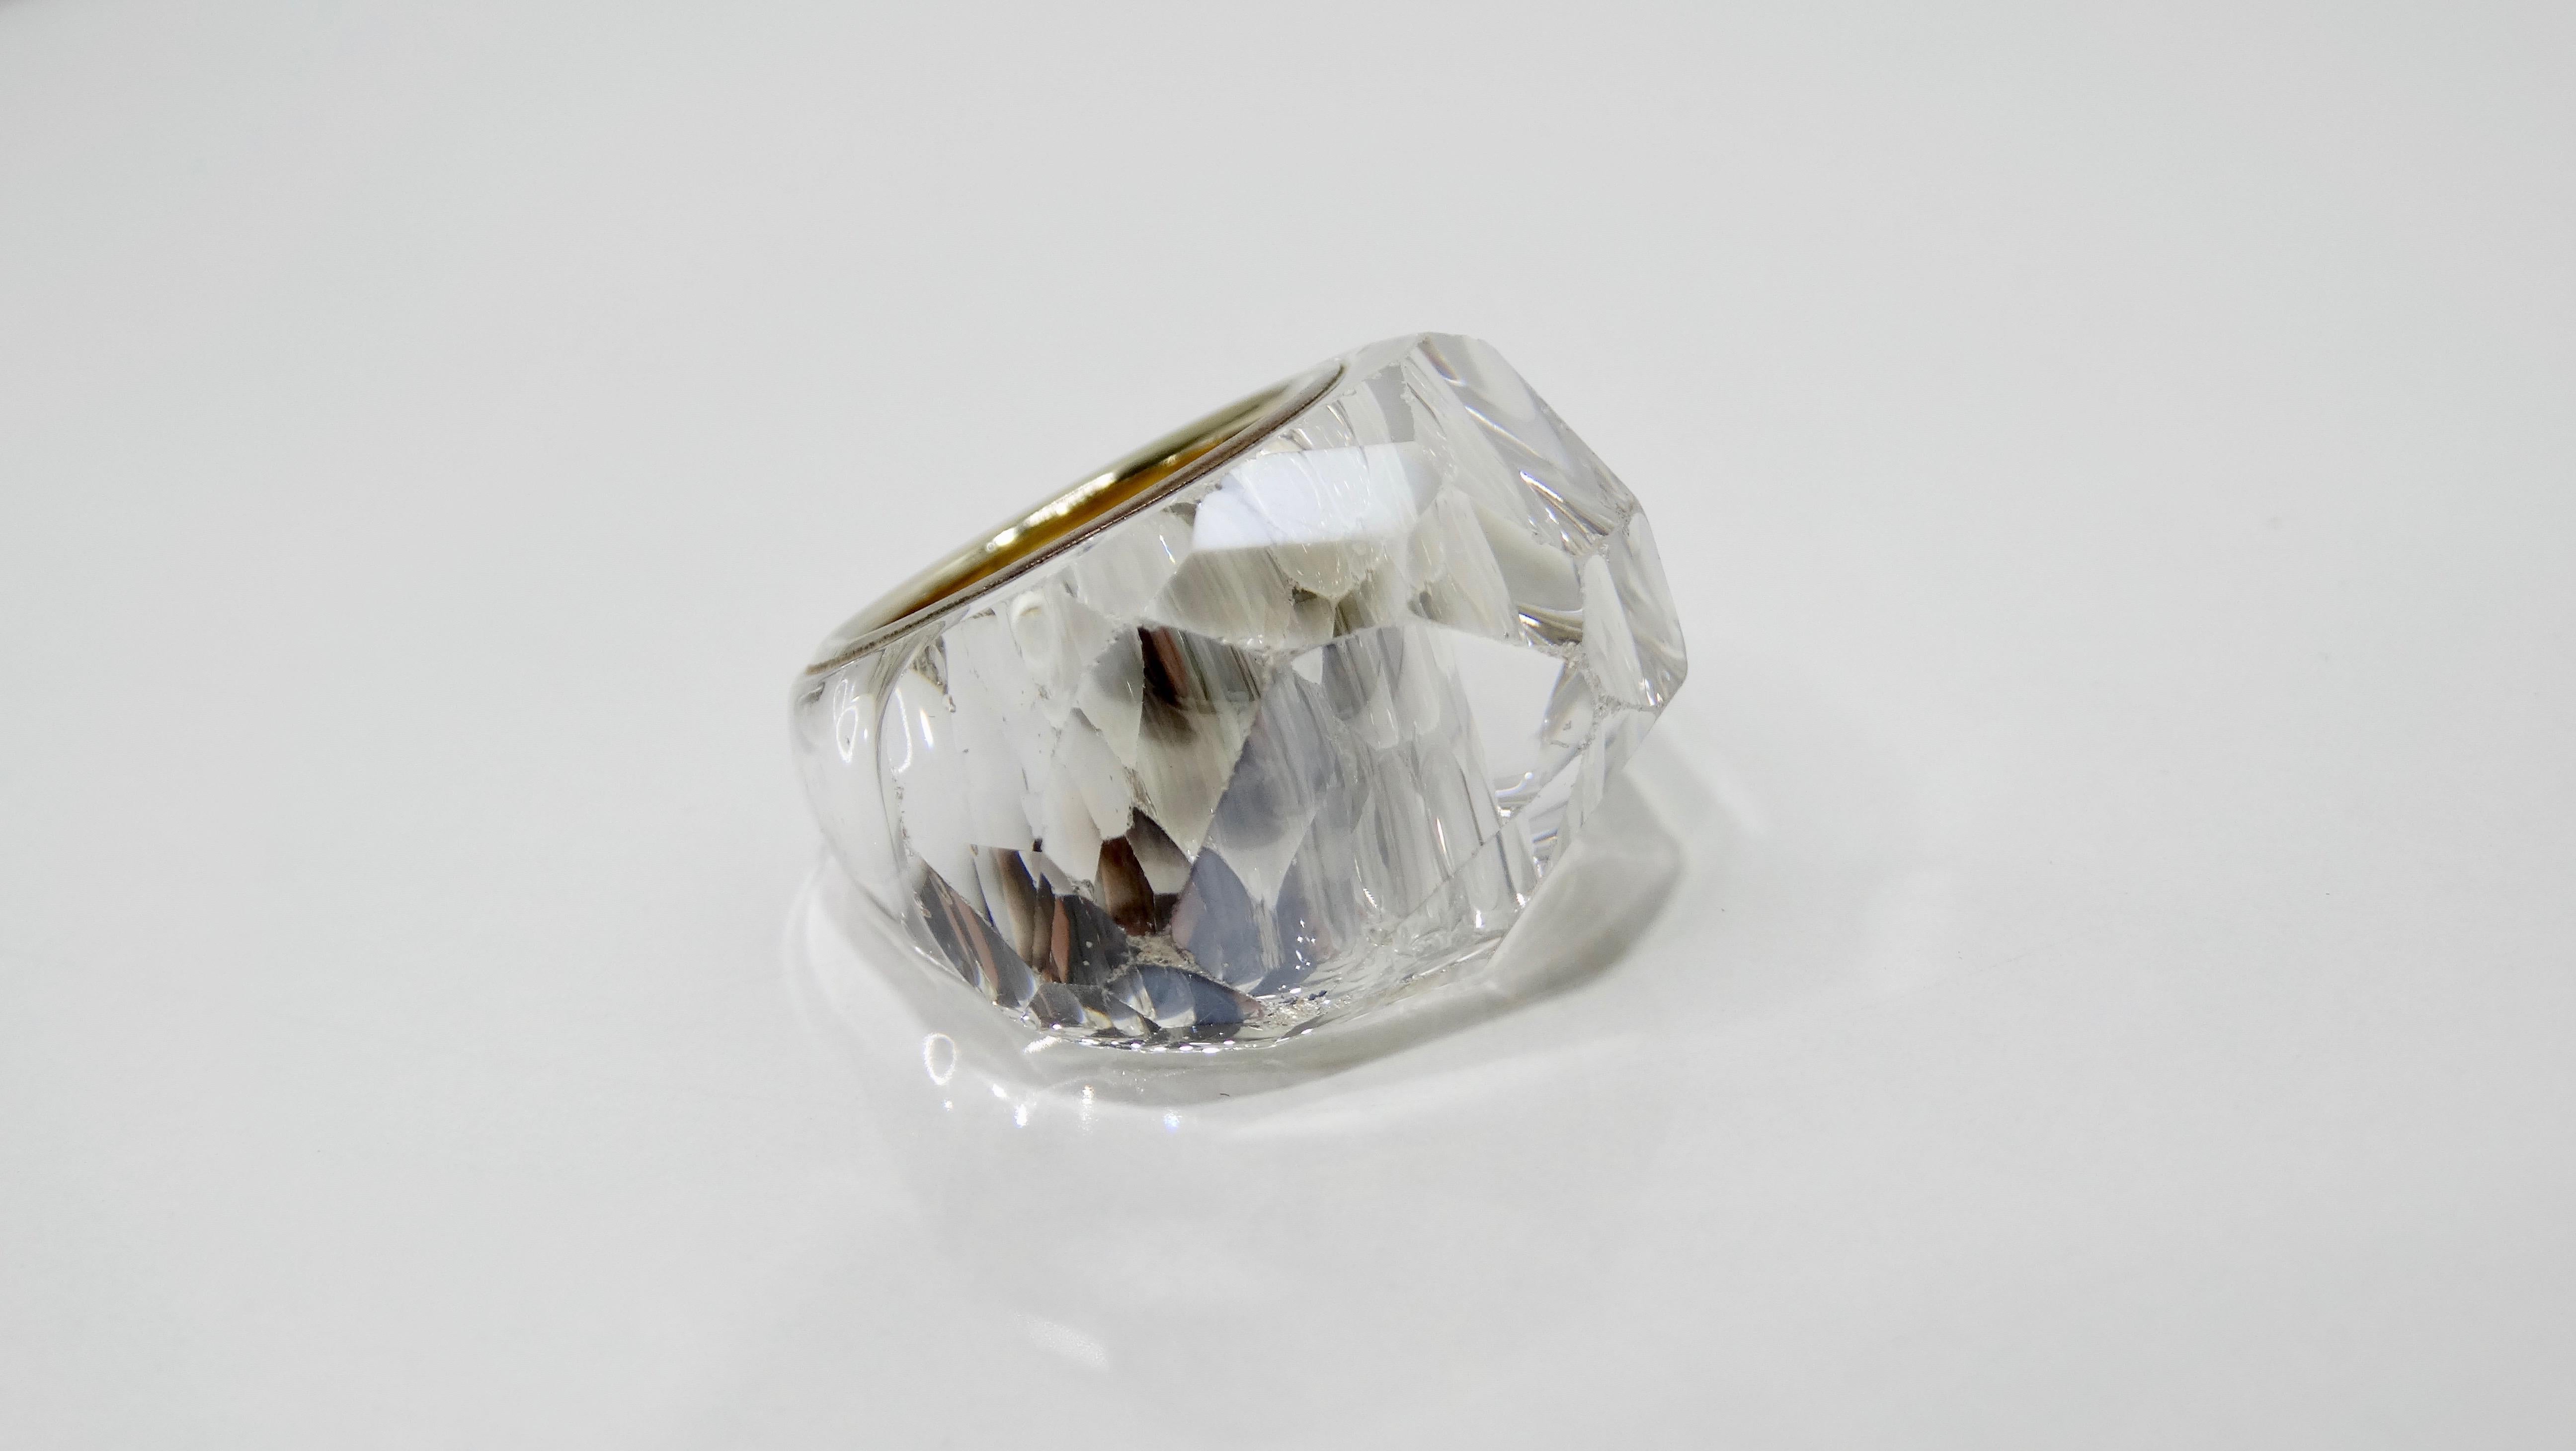 Dieser Swarovski Nirvana Ring ist ein echter Hingucker! Dieser große Ring in klarem Kristall, der 1998 eingeführt wurde, ist mit verschiedenen glitzernden Facetten versehen, die ein subtiles Herzmotiv bilden. Die Innenseite des Armbands ist mit